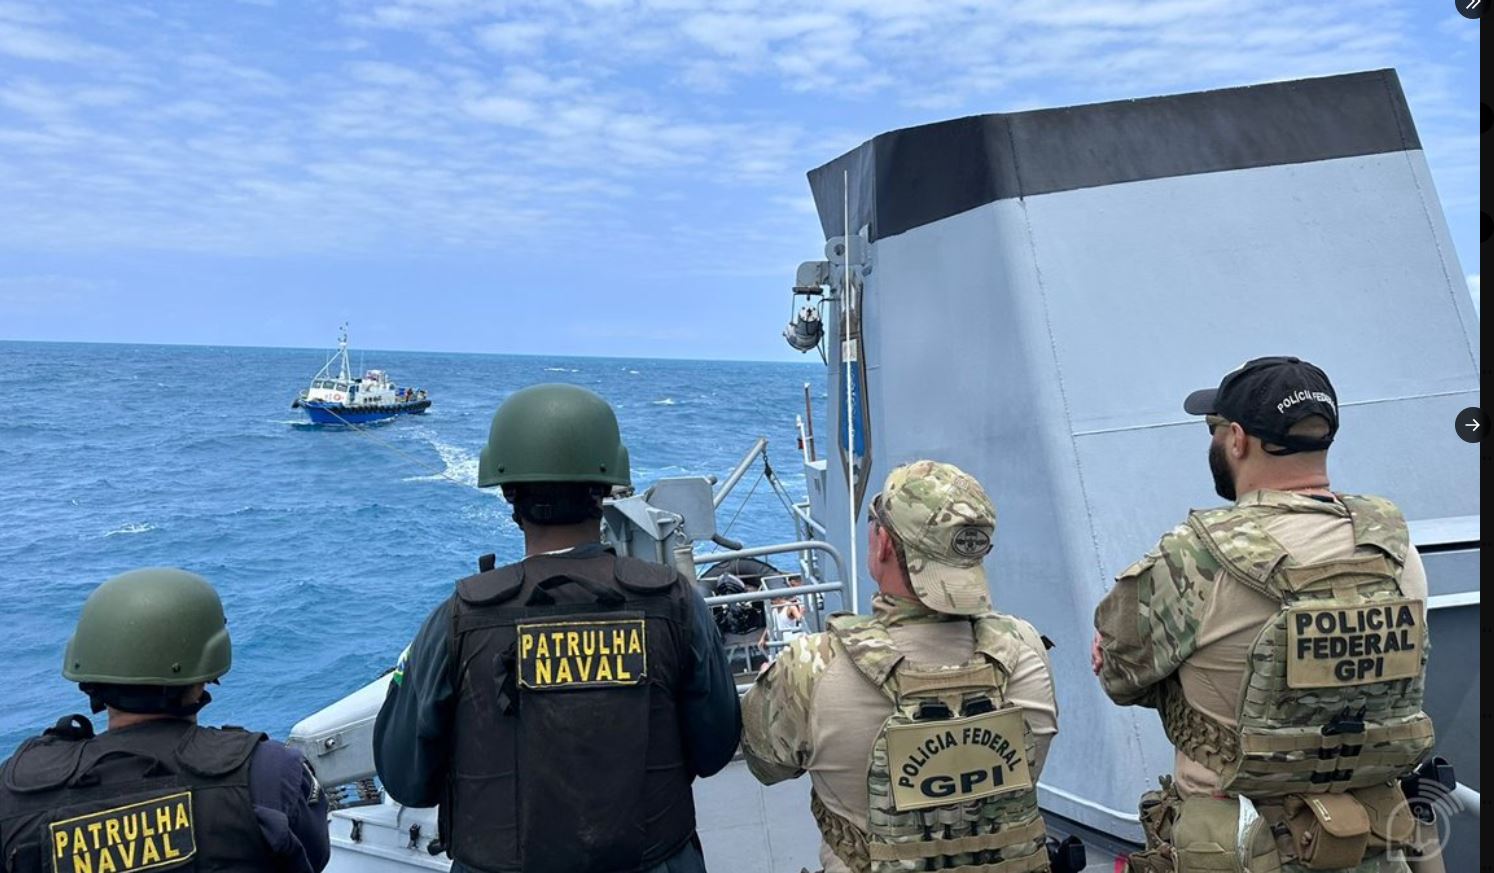 Στην κατάσχεση 3,6 τόνων κοκαΐνης προχώρησε το Πολεμικό Ναυτικό της Βραζιλίας